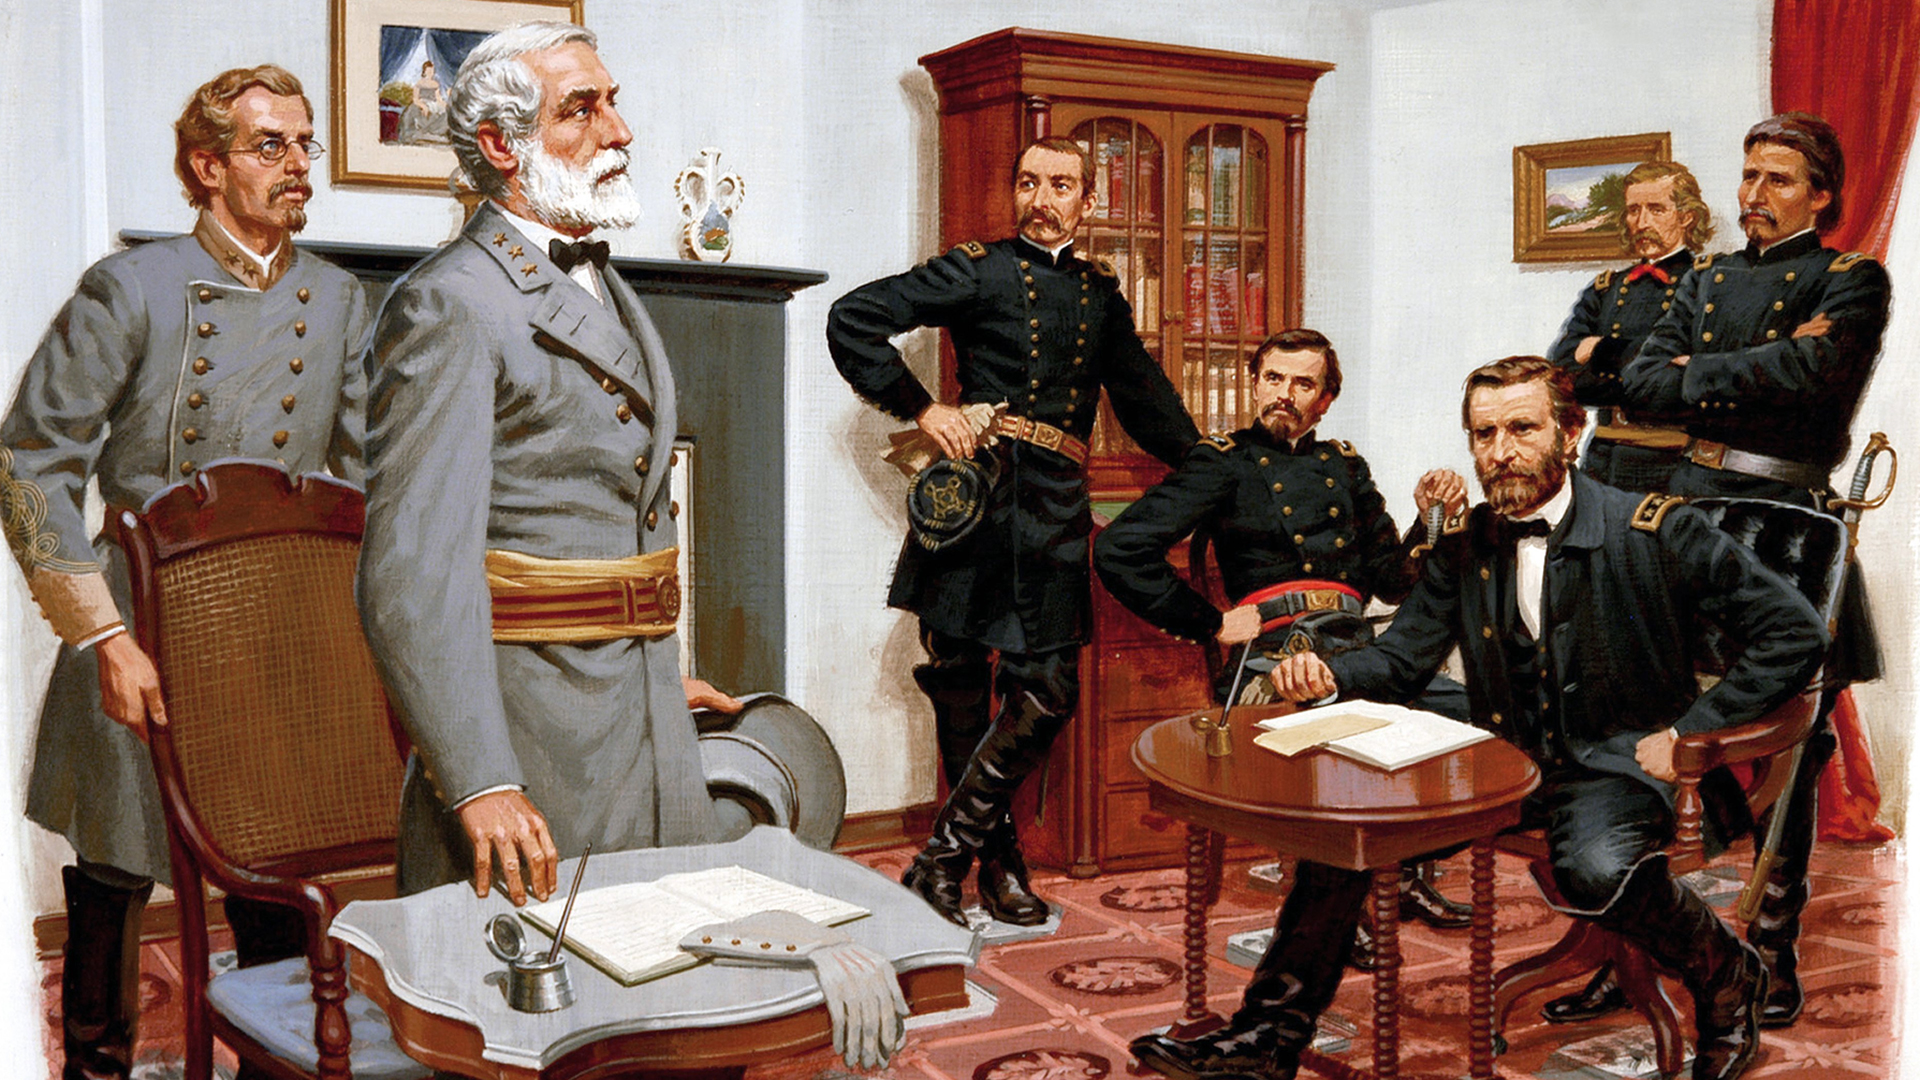 Robert E. Lee surrenders